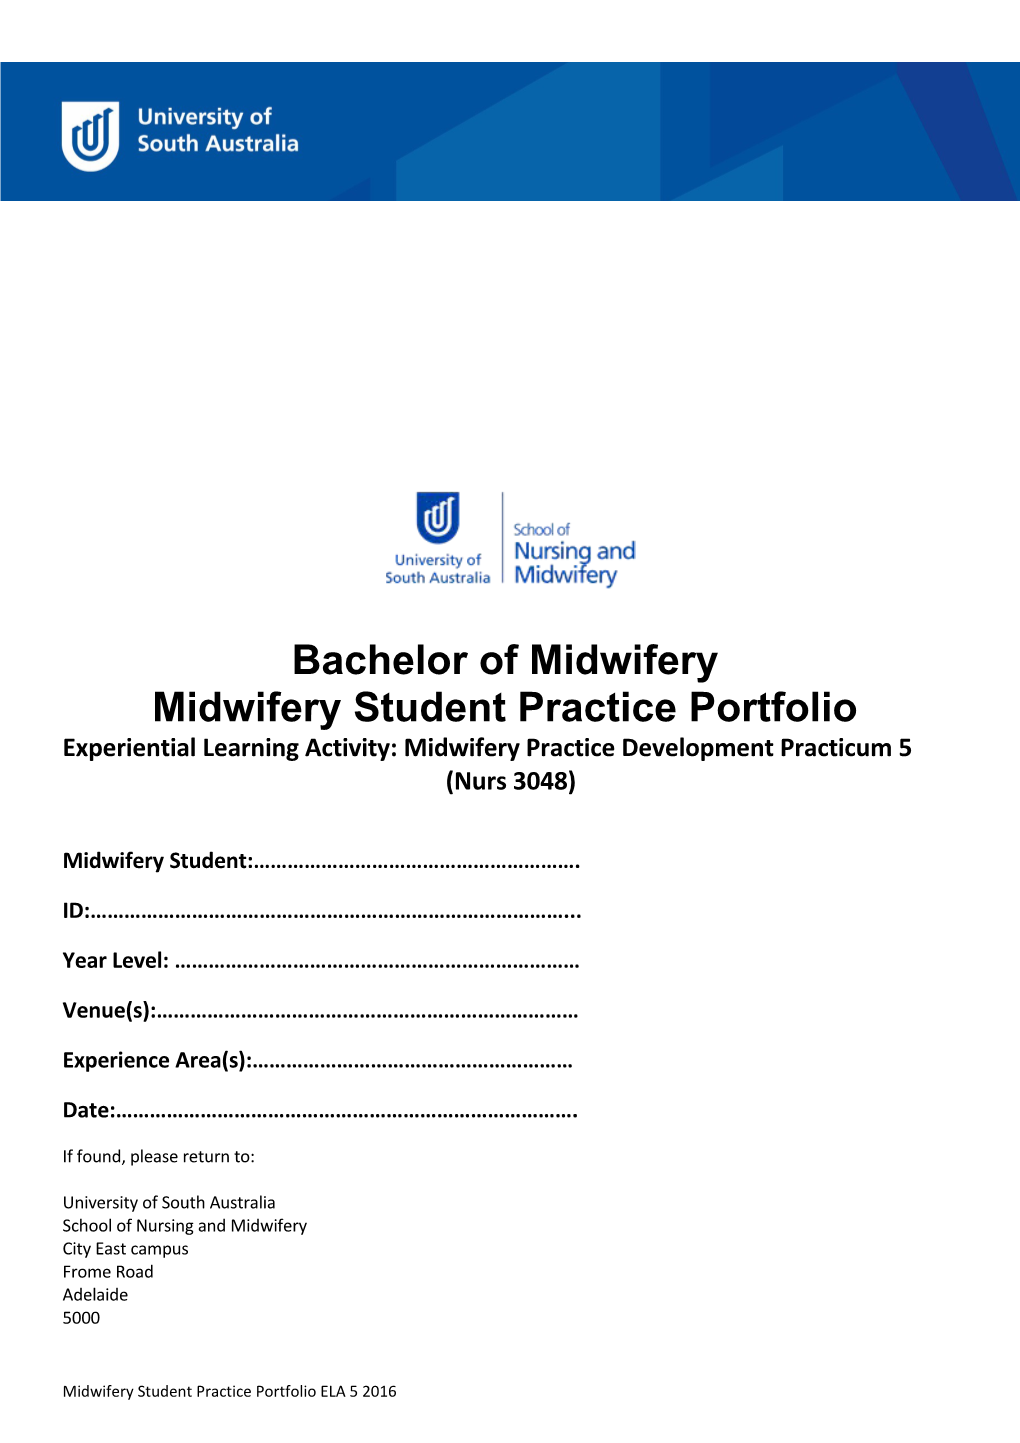 Midwifery Student Practice Portfolio